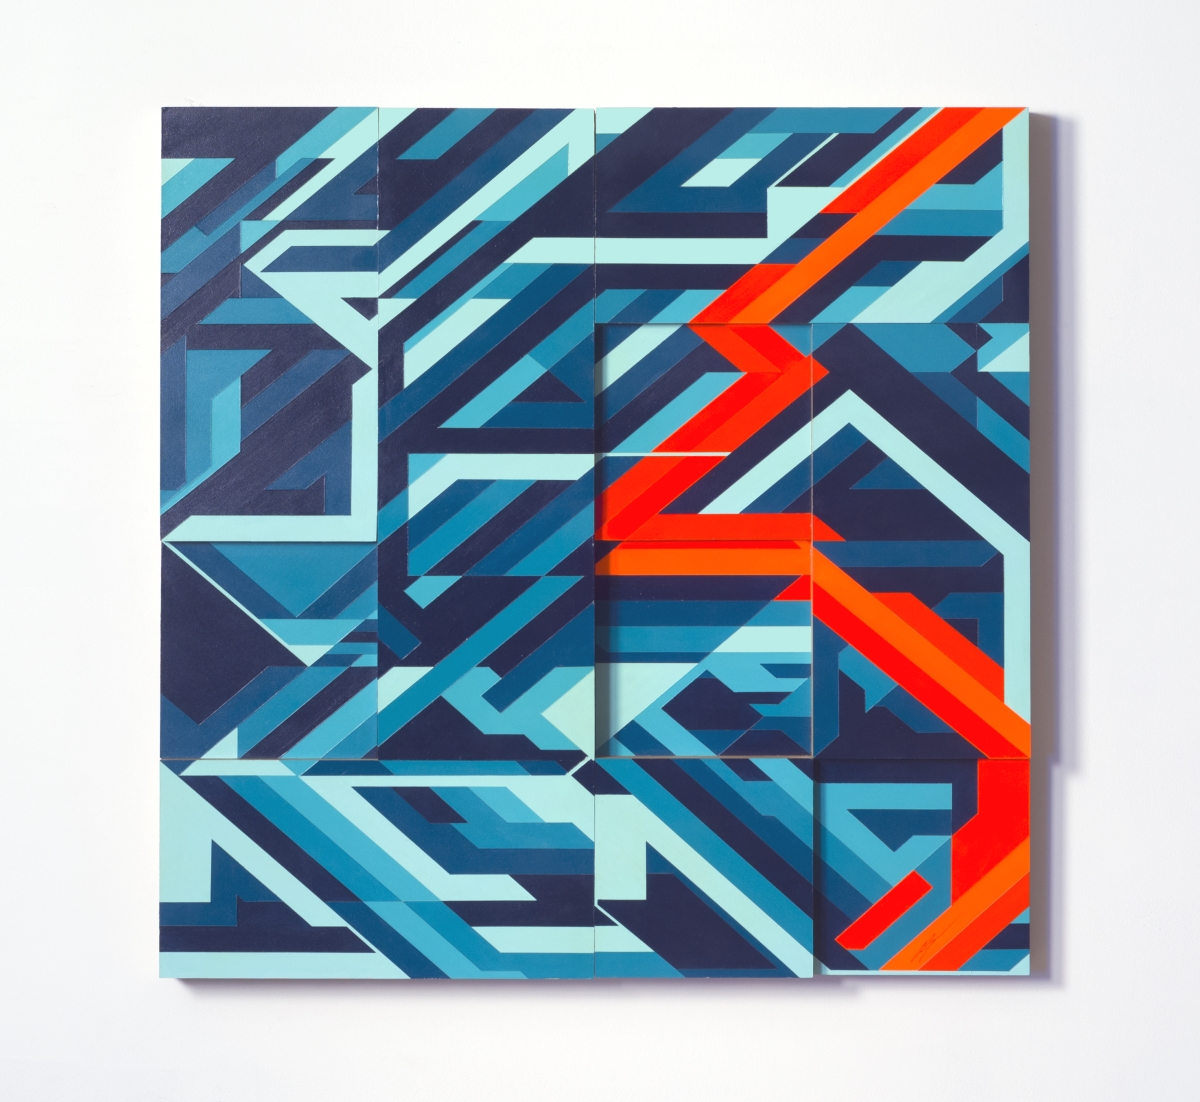 36" x 36" Acrylic on Wood, 2014